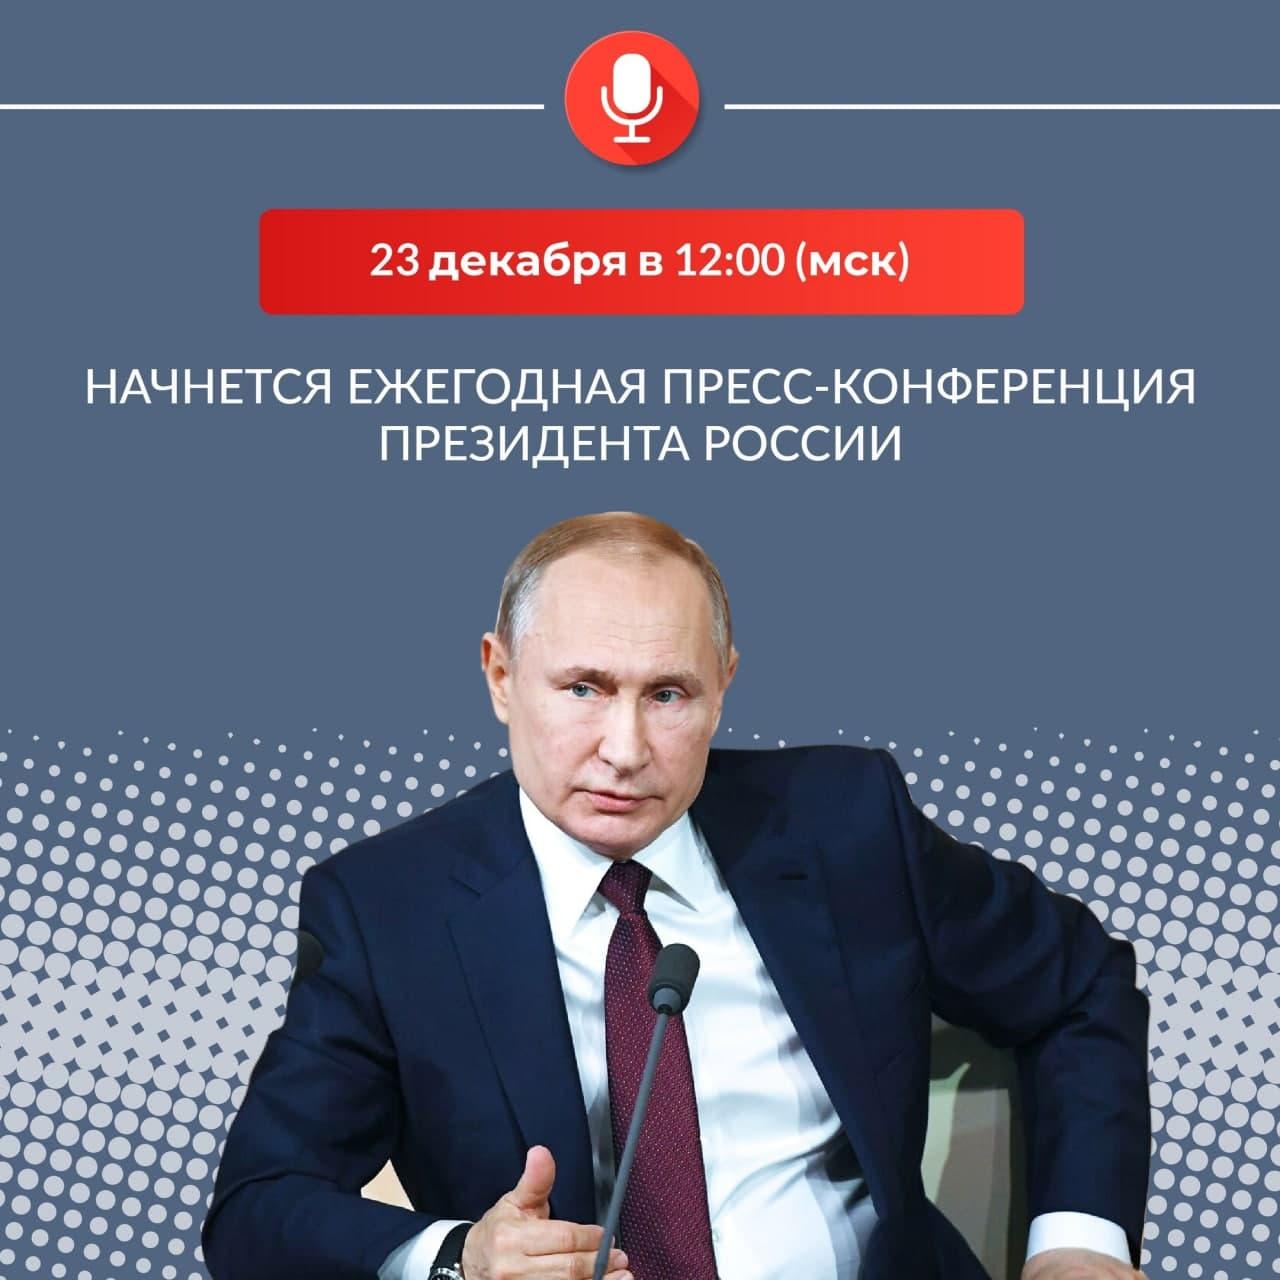 Владимир Путин: Объем соцподдержки в минувшем году был рекордным